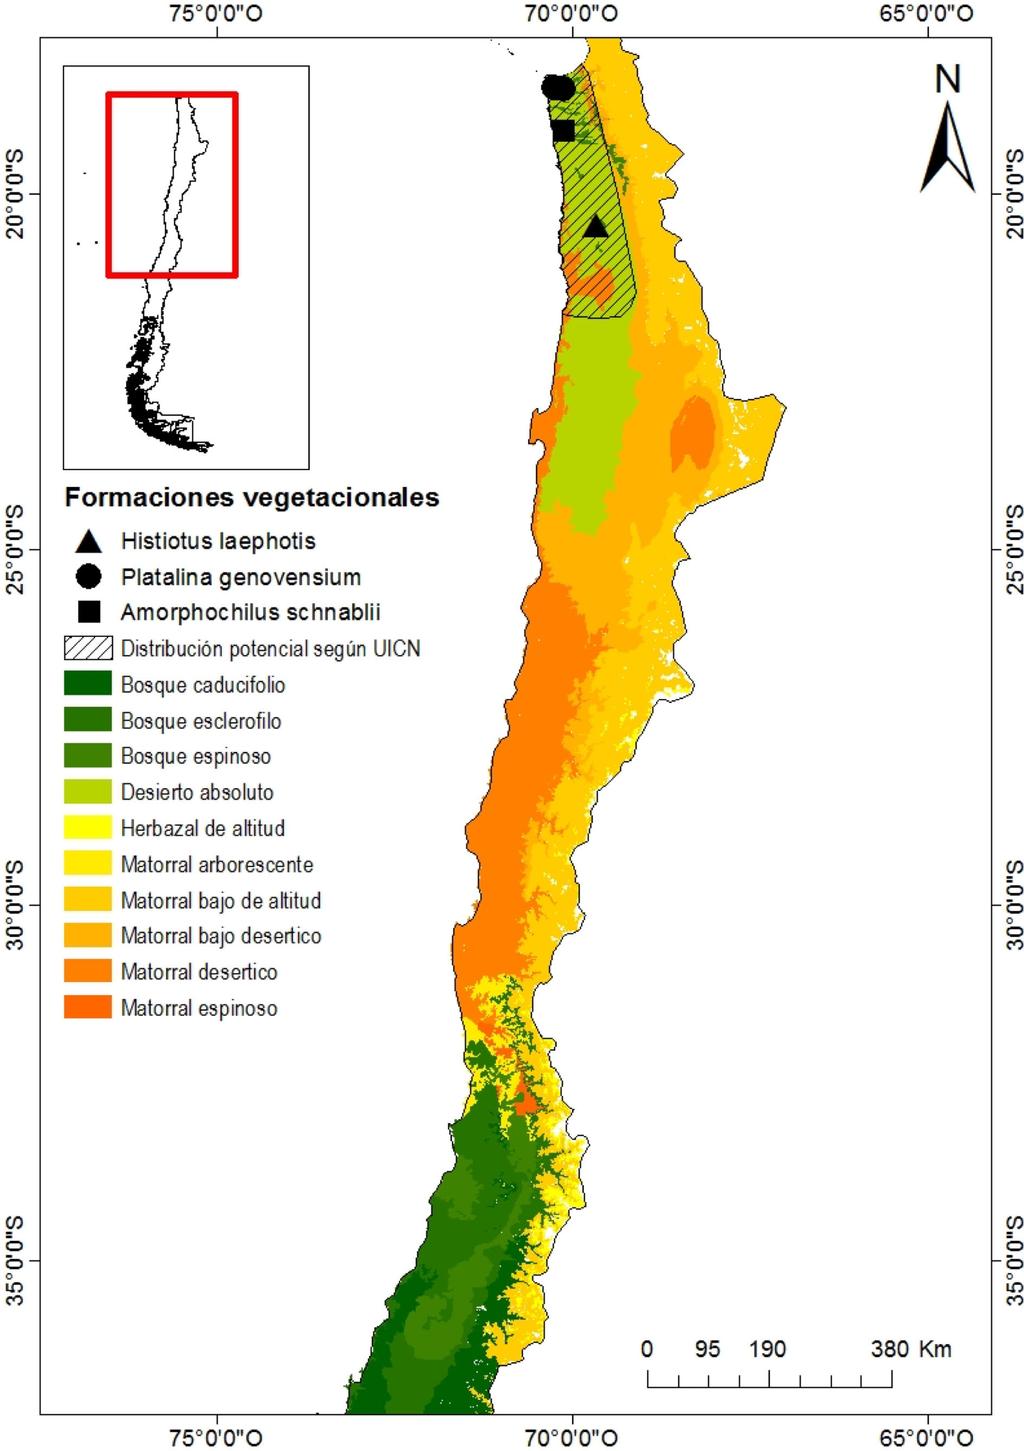 Fig. 4. Distribución potencial de Amorphochilus schnablii según UICN (2015) en Chile.